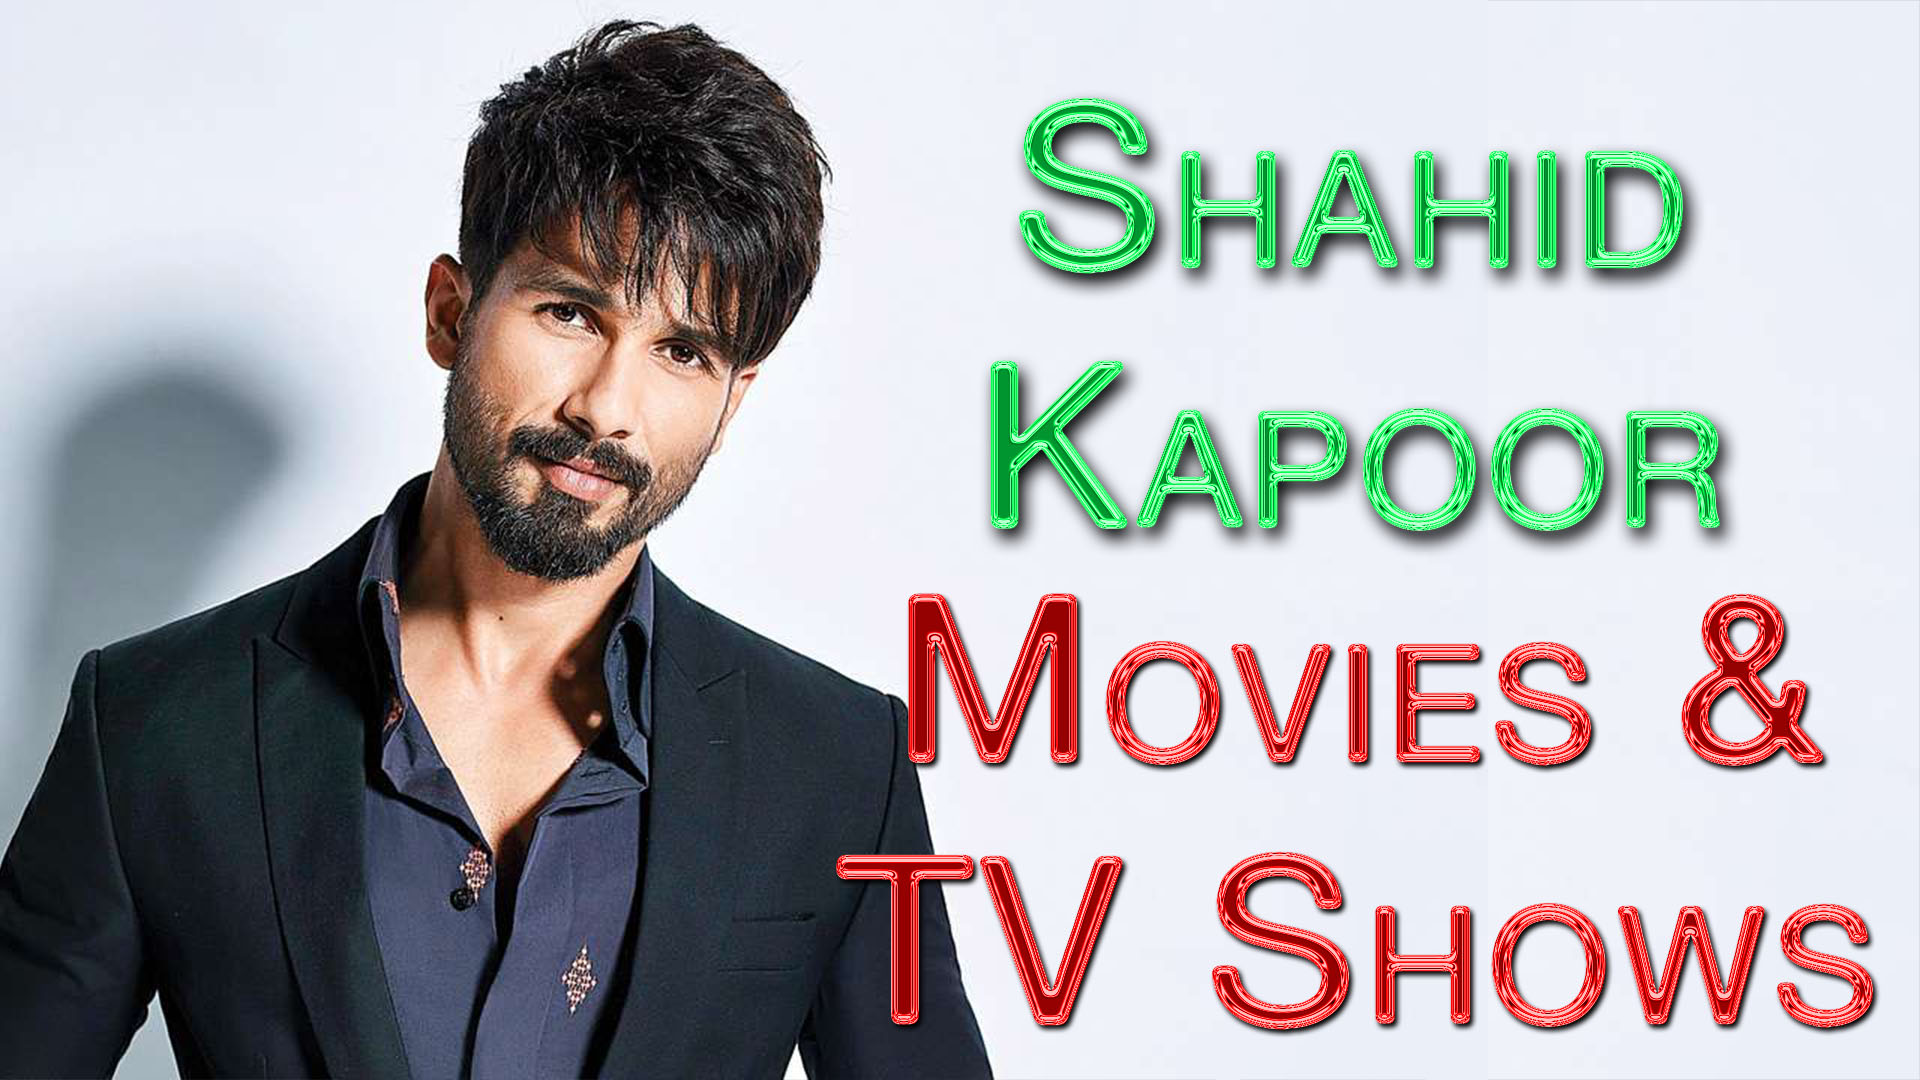 shahid kapoor movies list 2012